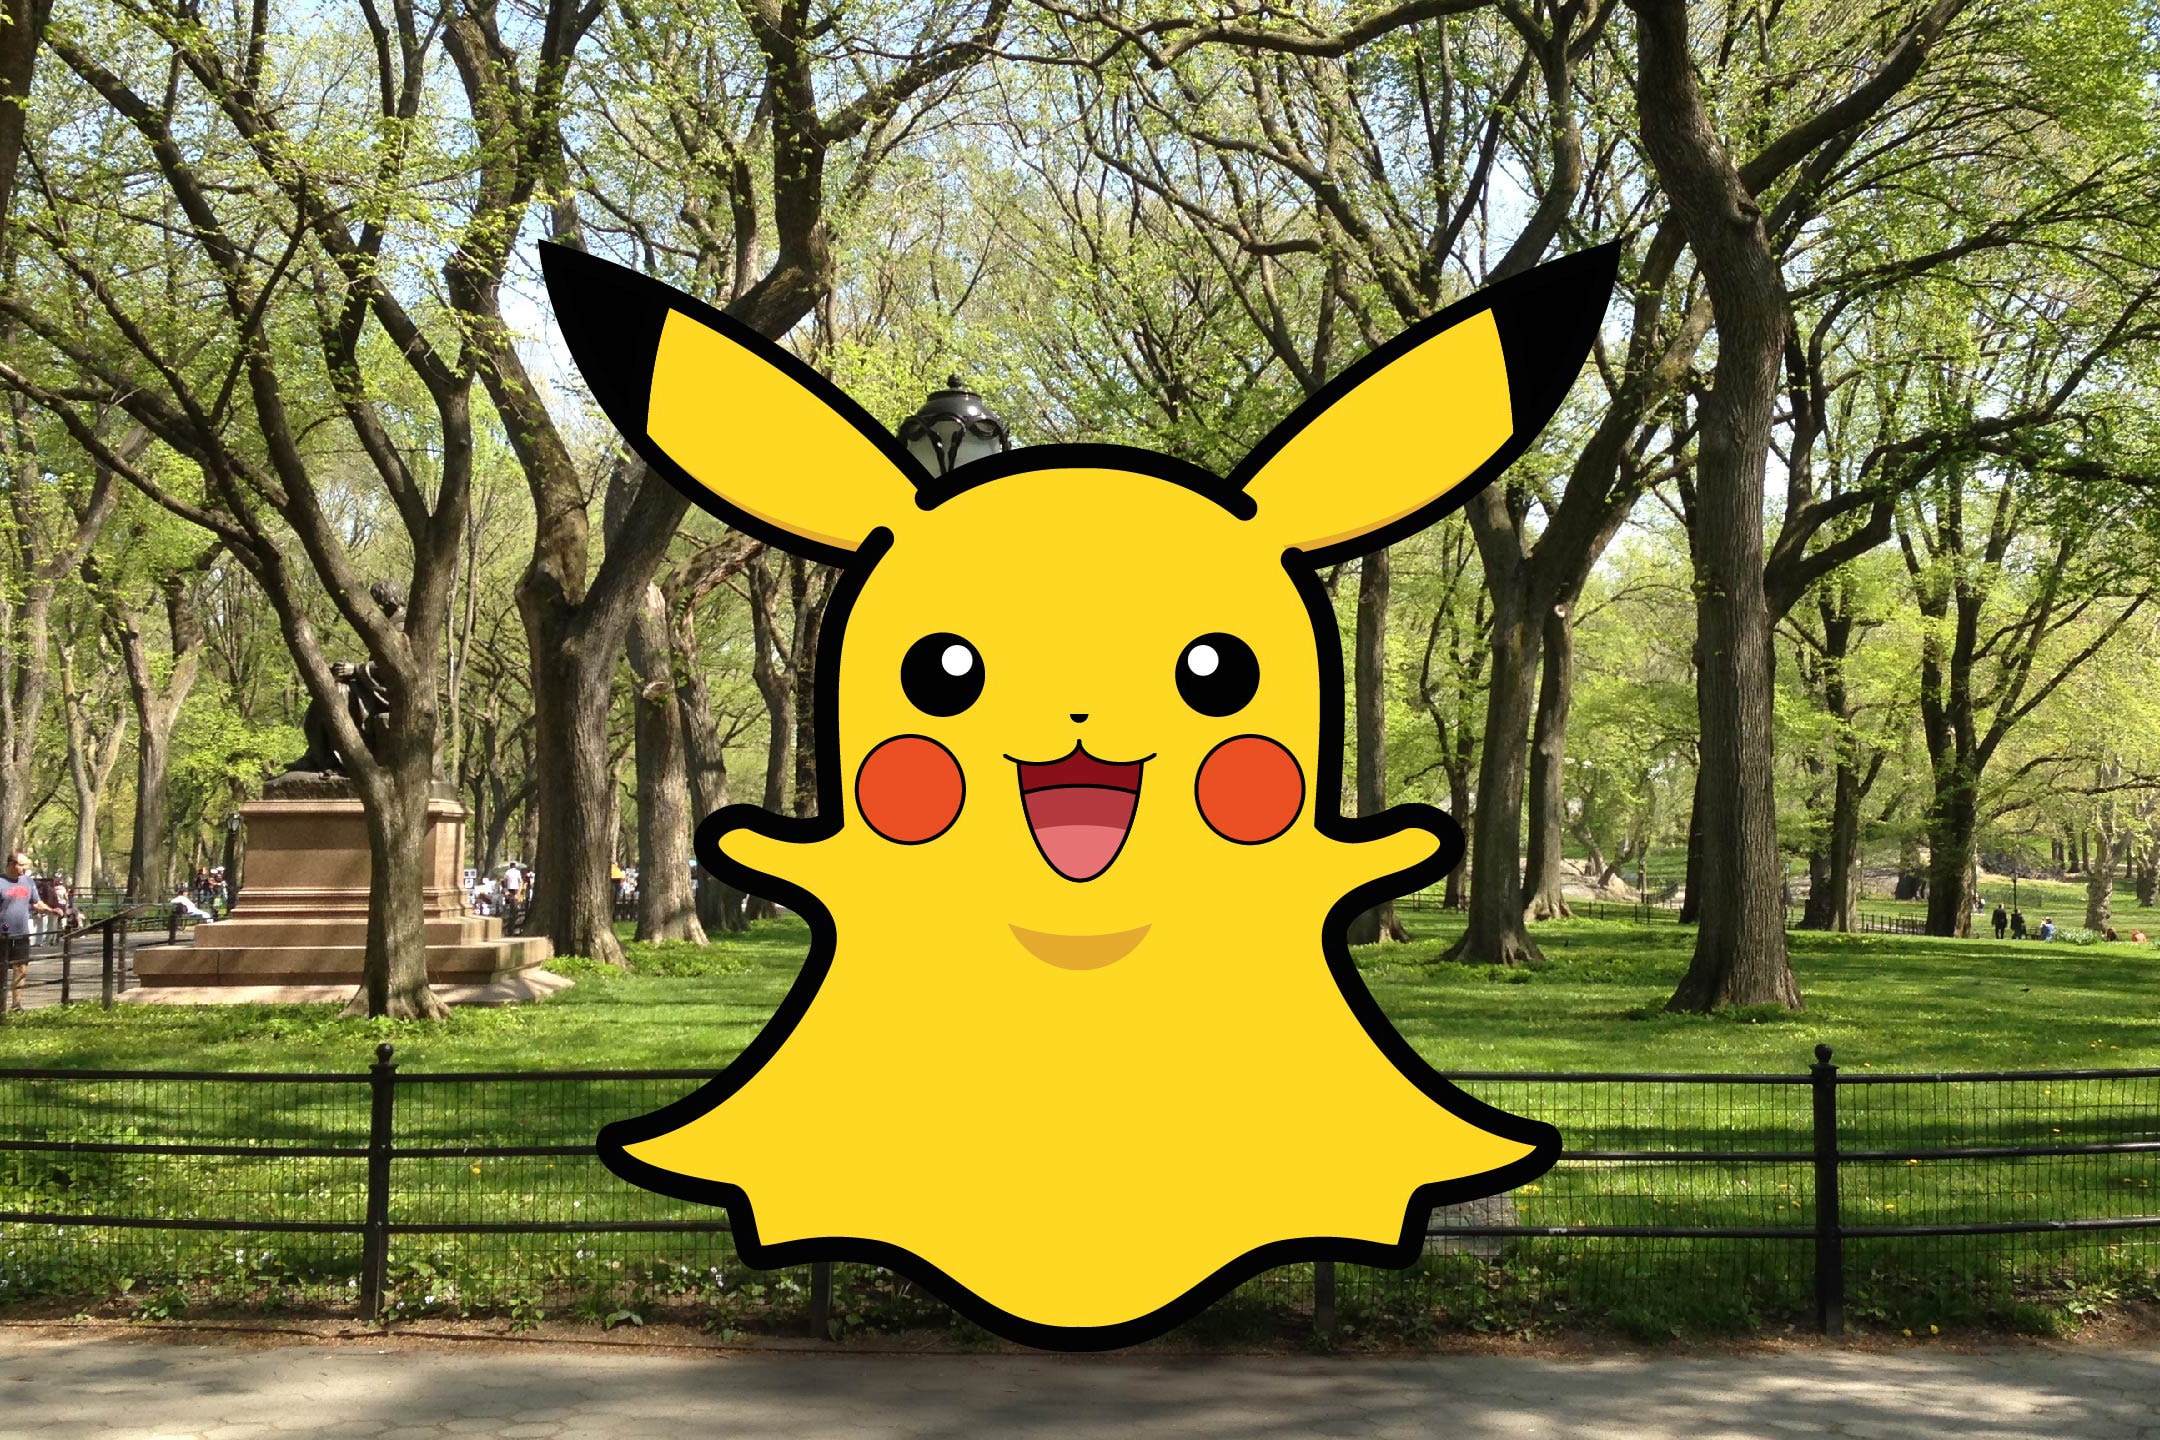 賺錢之道－Snapchat 新加入 Pikachu 作為其濾鏡效果